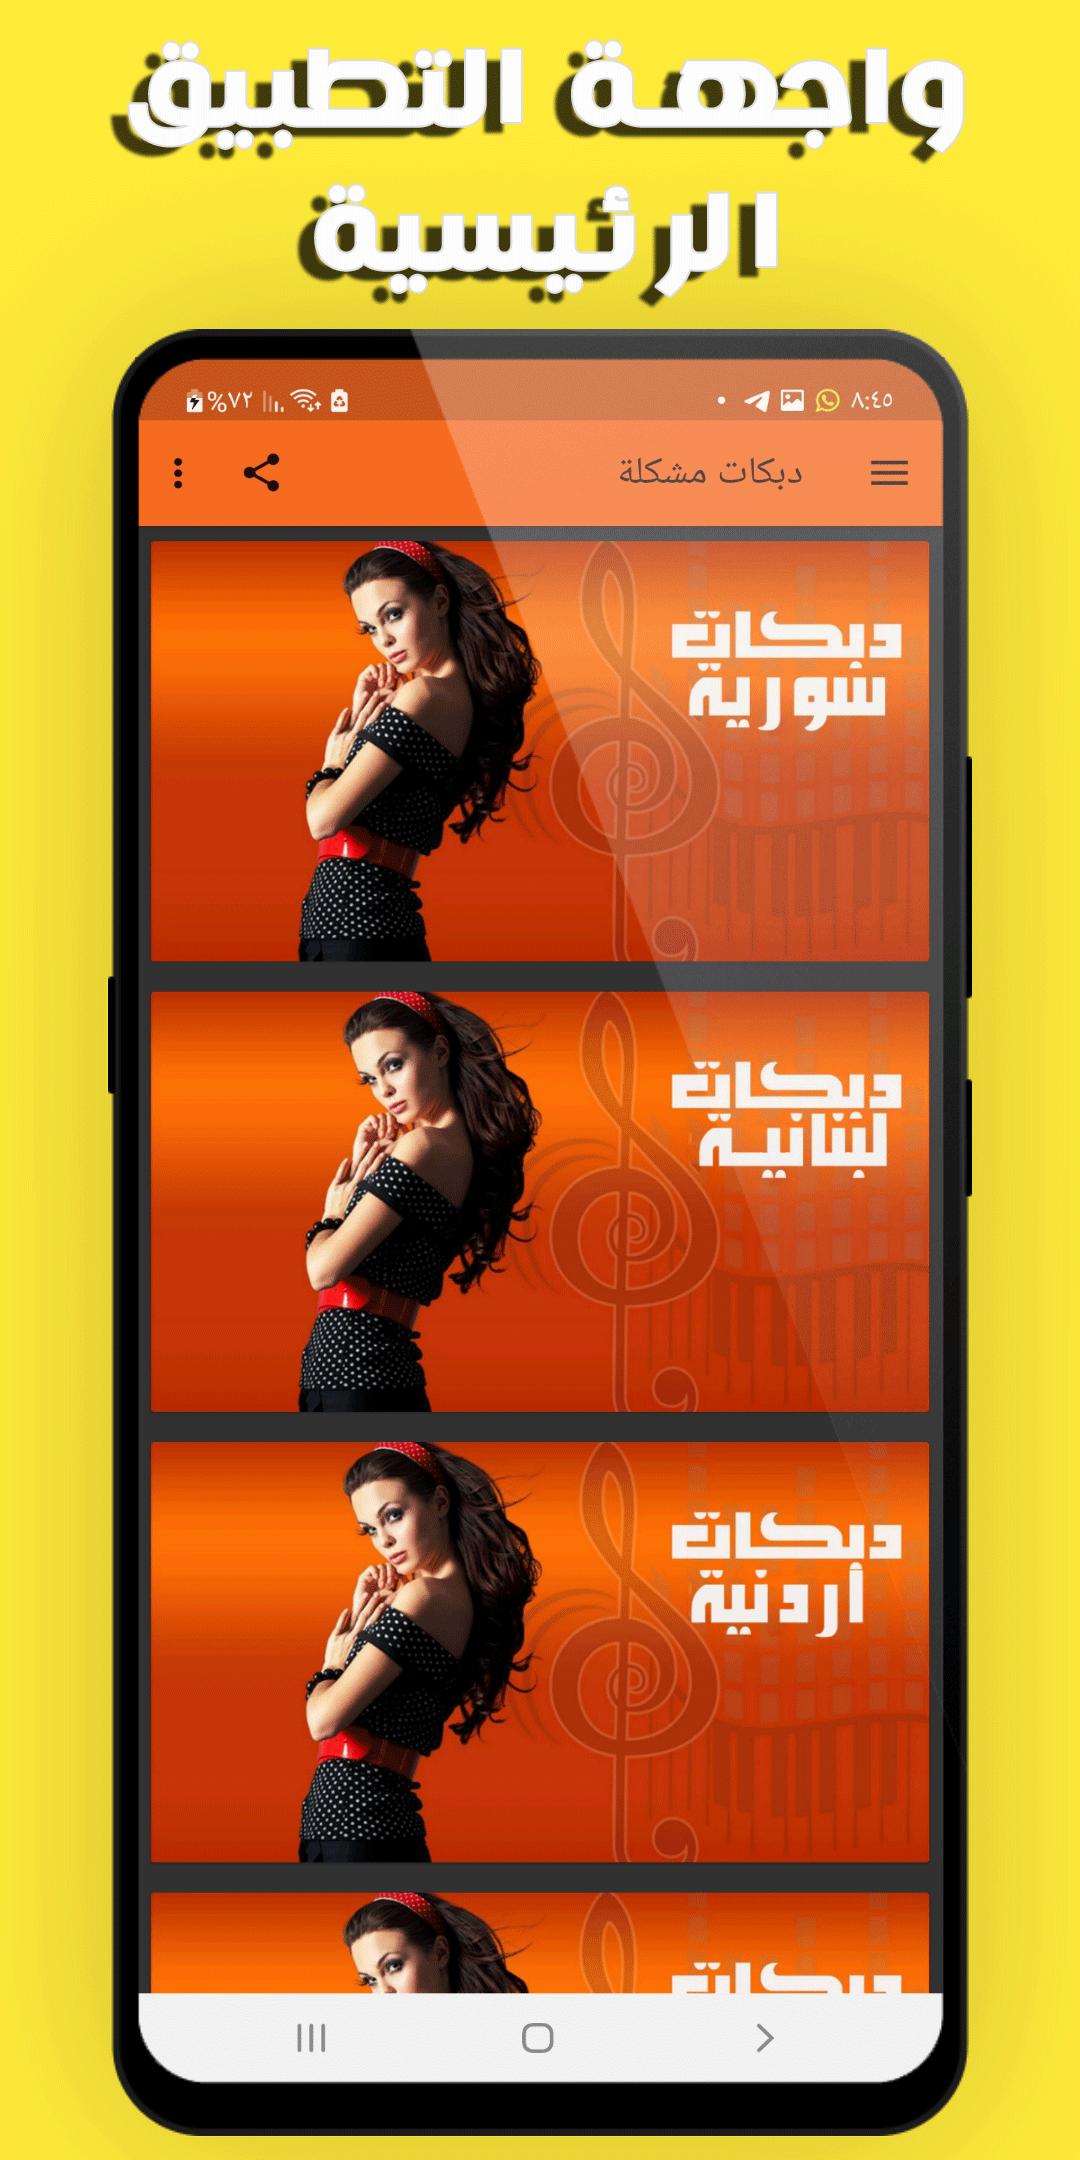 اجدد اغاني الدبكات العربية 2021 بدون نت APK voor Android Download